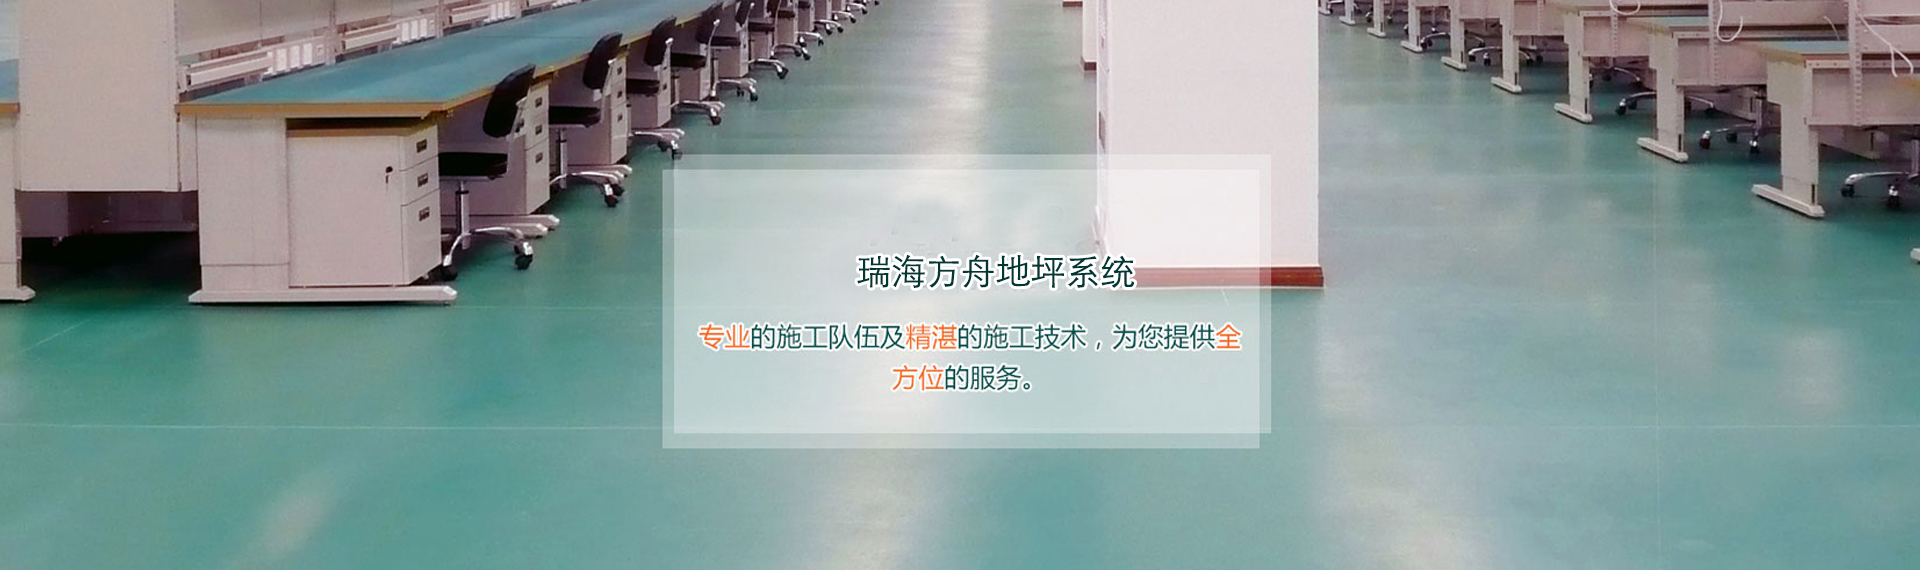 北京瑞海方舟建筑裝飾工程有限公司